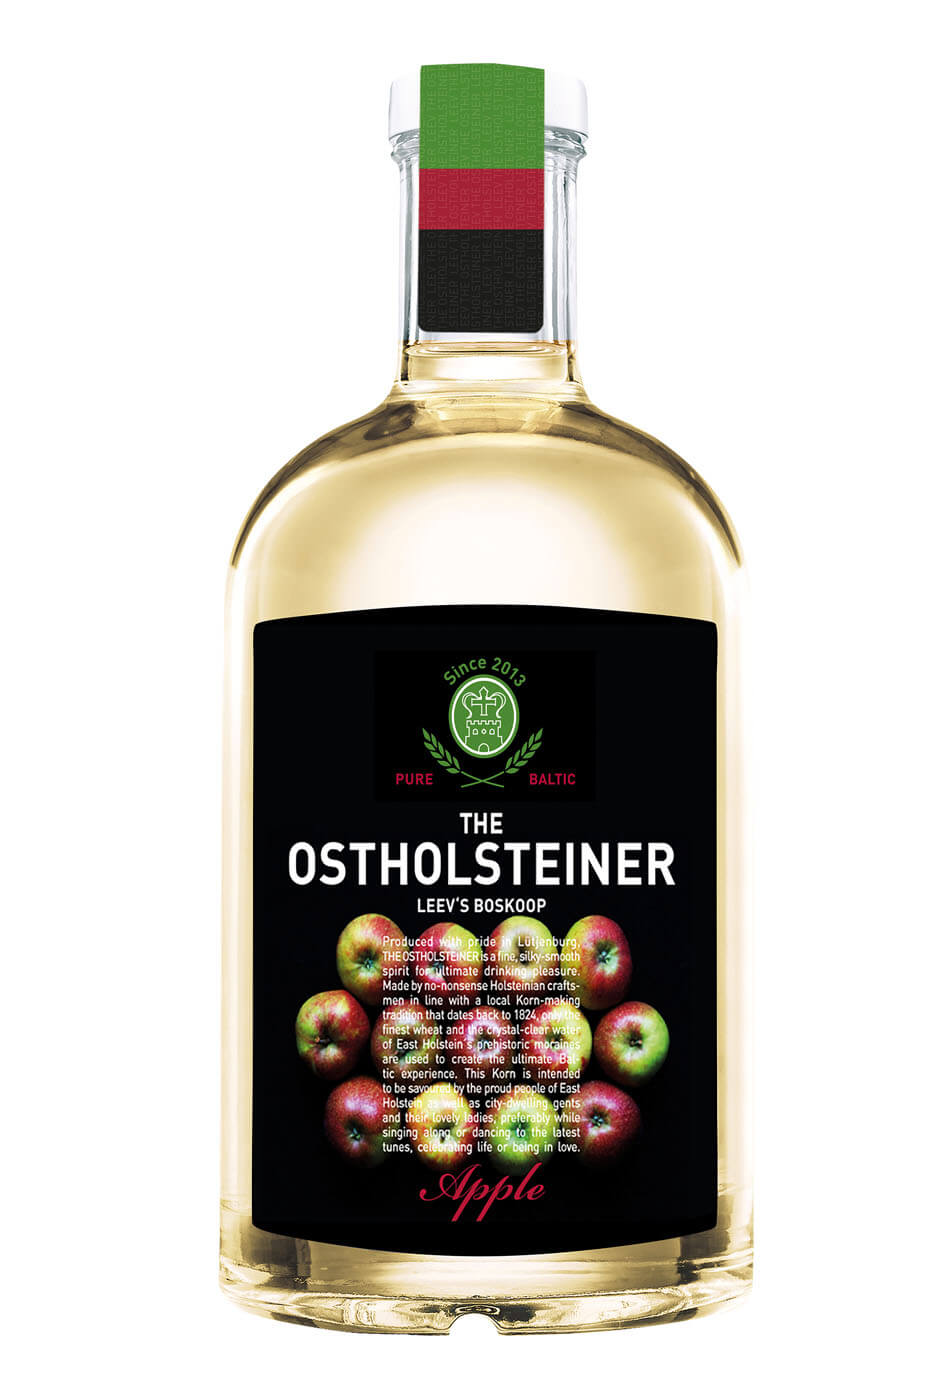 Sortimentserweiterung: The Ostholsteiner launcht Apfelkorn ...